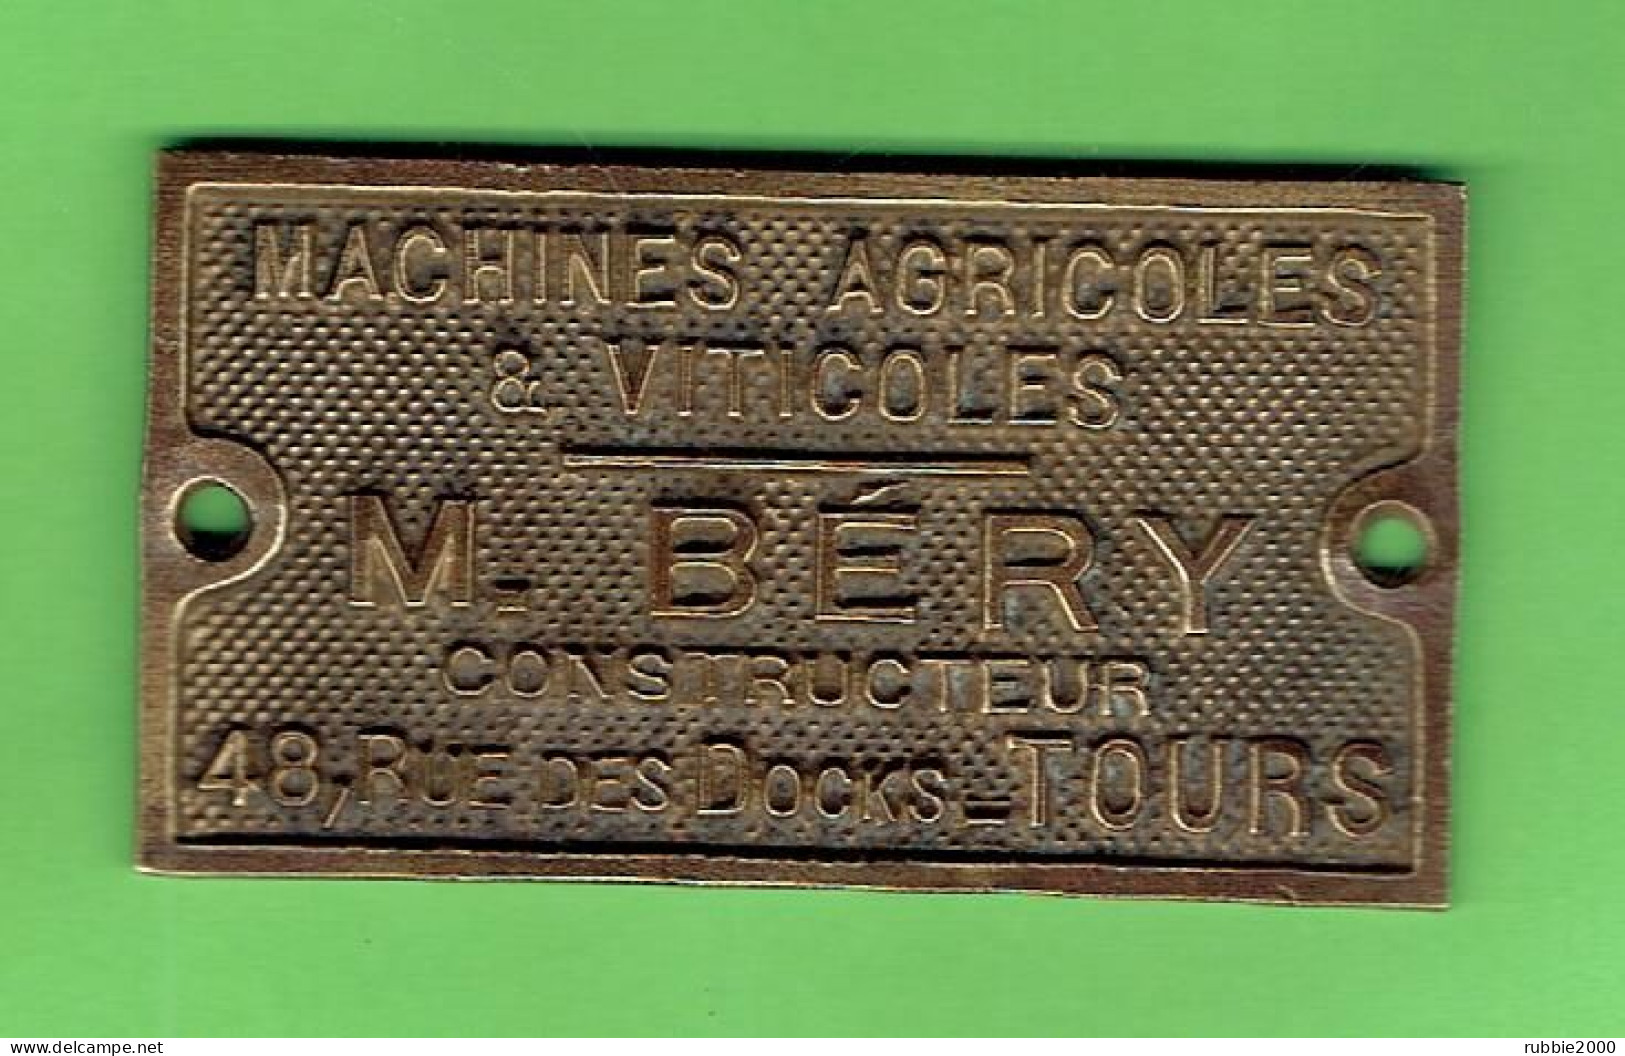 PLAQUE BRONZE PUBLICITAIRE MACHINES AGRICOLES ET VITICOLES M. BERY CONSTRUCTEUR 48 RUE DES DOOKS A TOURS - Ancient Tools